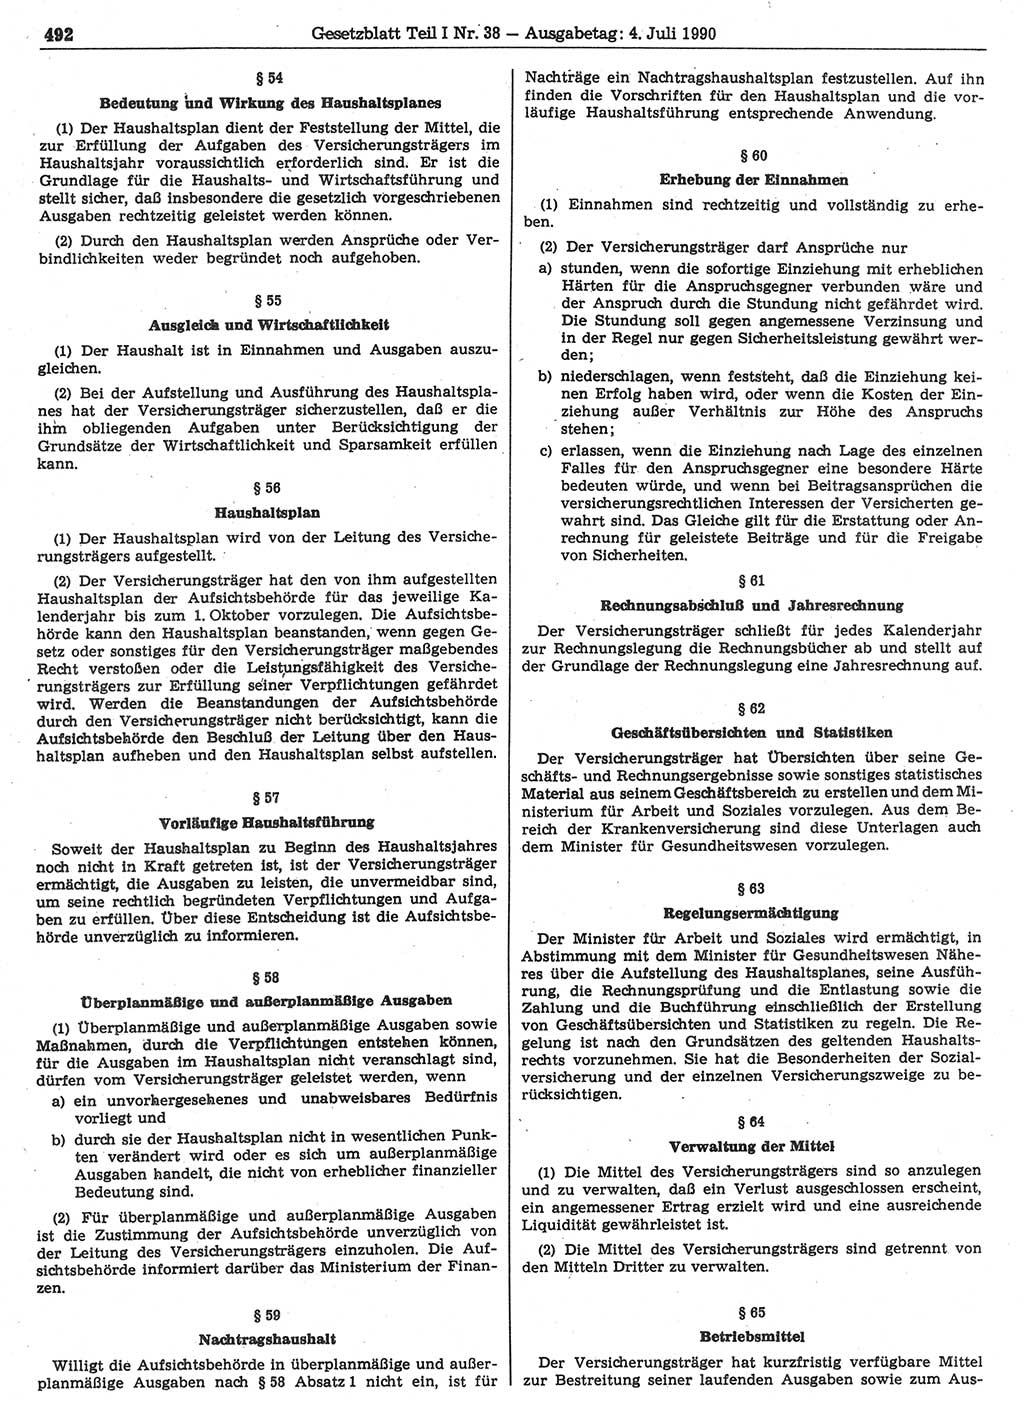 Gesetzblatt (GBl.) der Deutschen Demokratischen Republik (DDR) Teil Ⅰ 1990, Seite 492 (GBl. DDR Ⅰ 1990, S. 492)